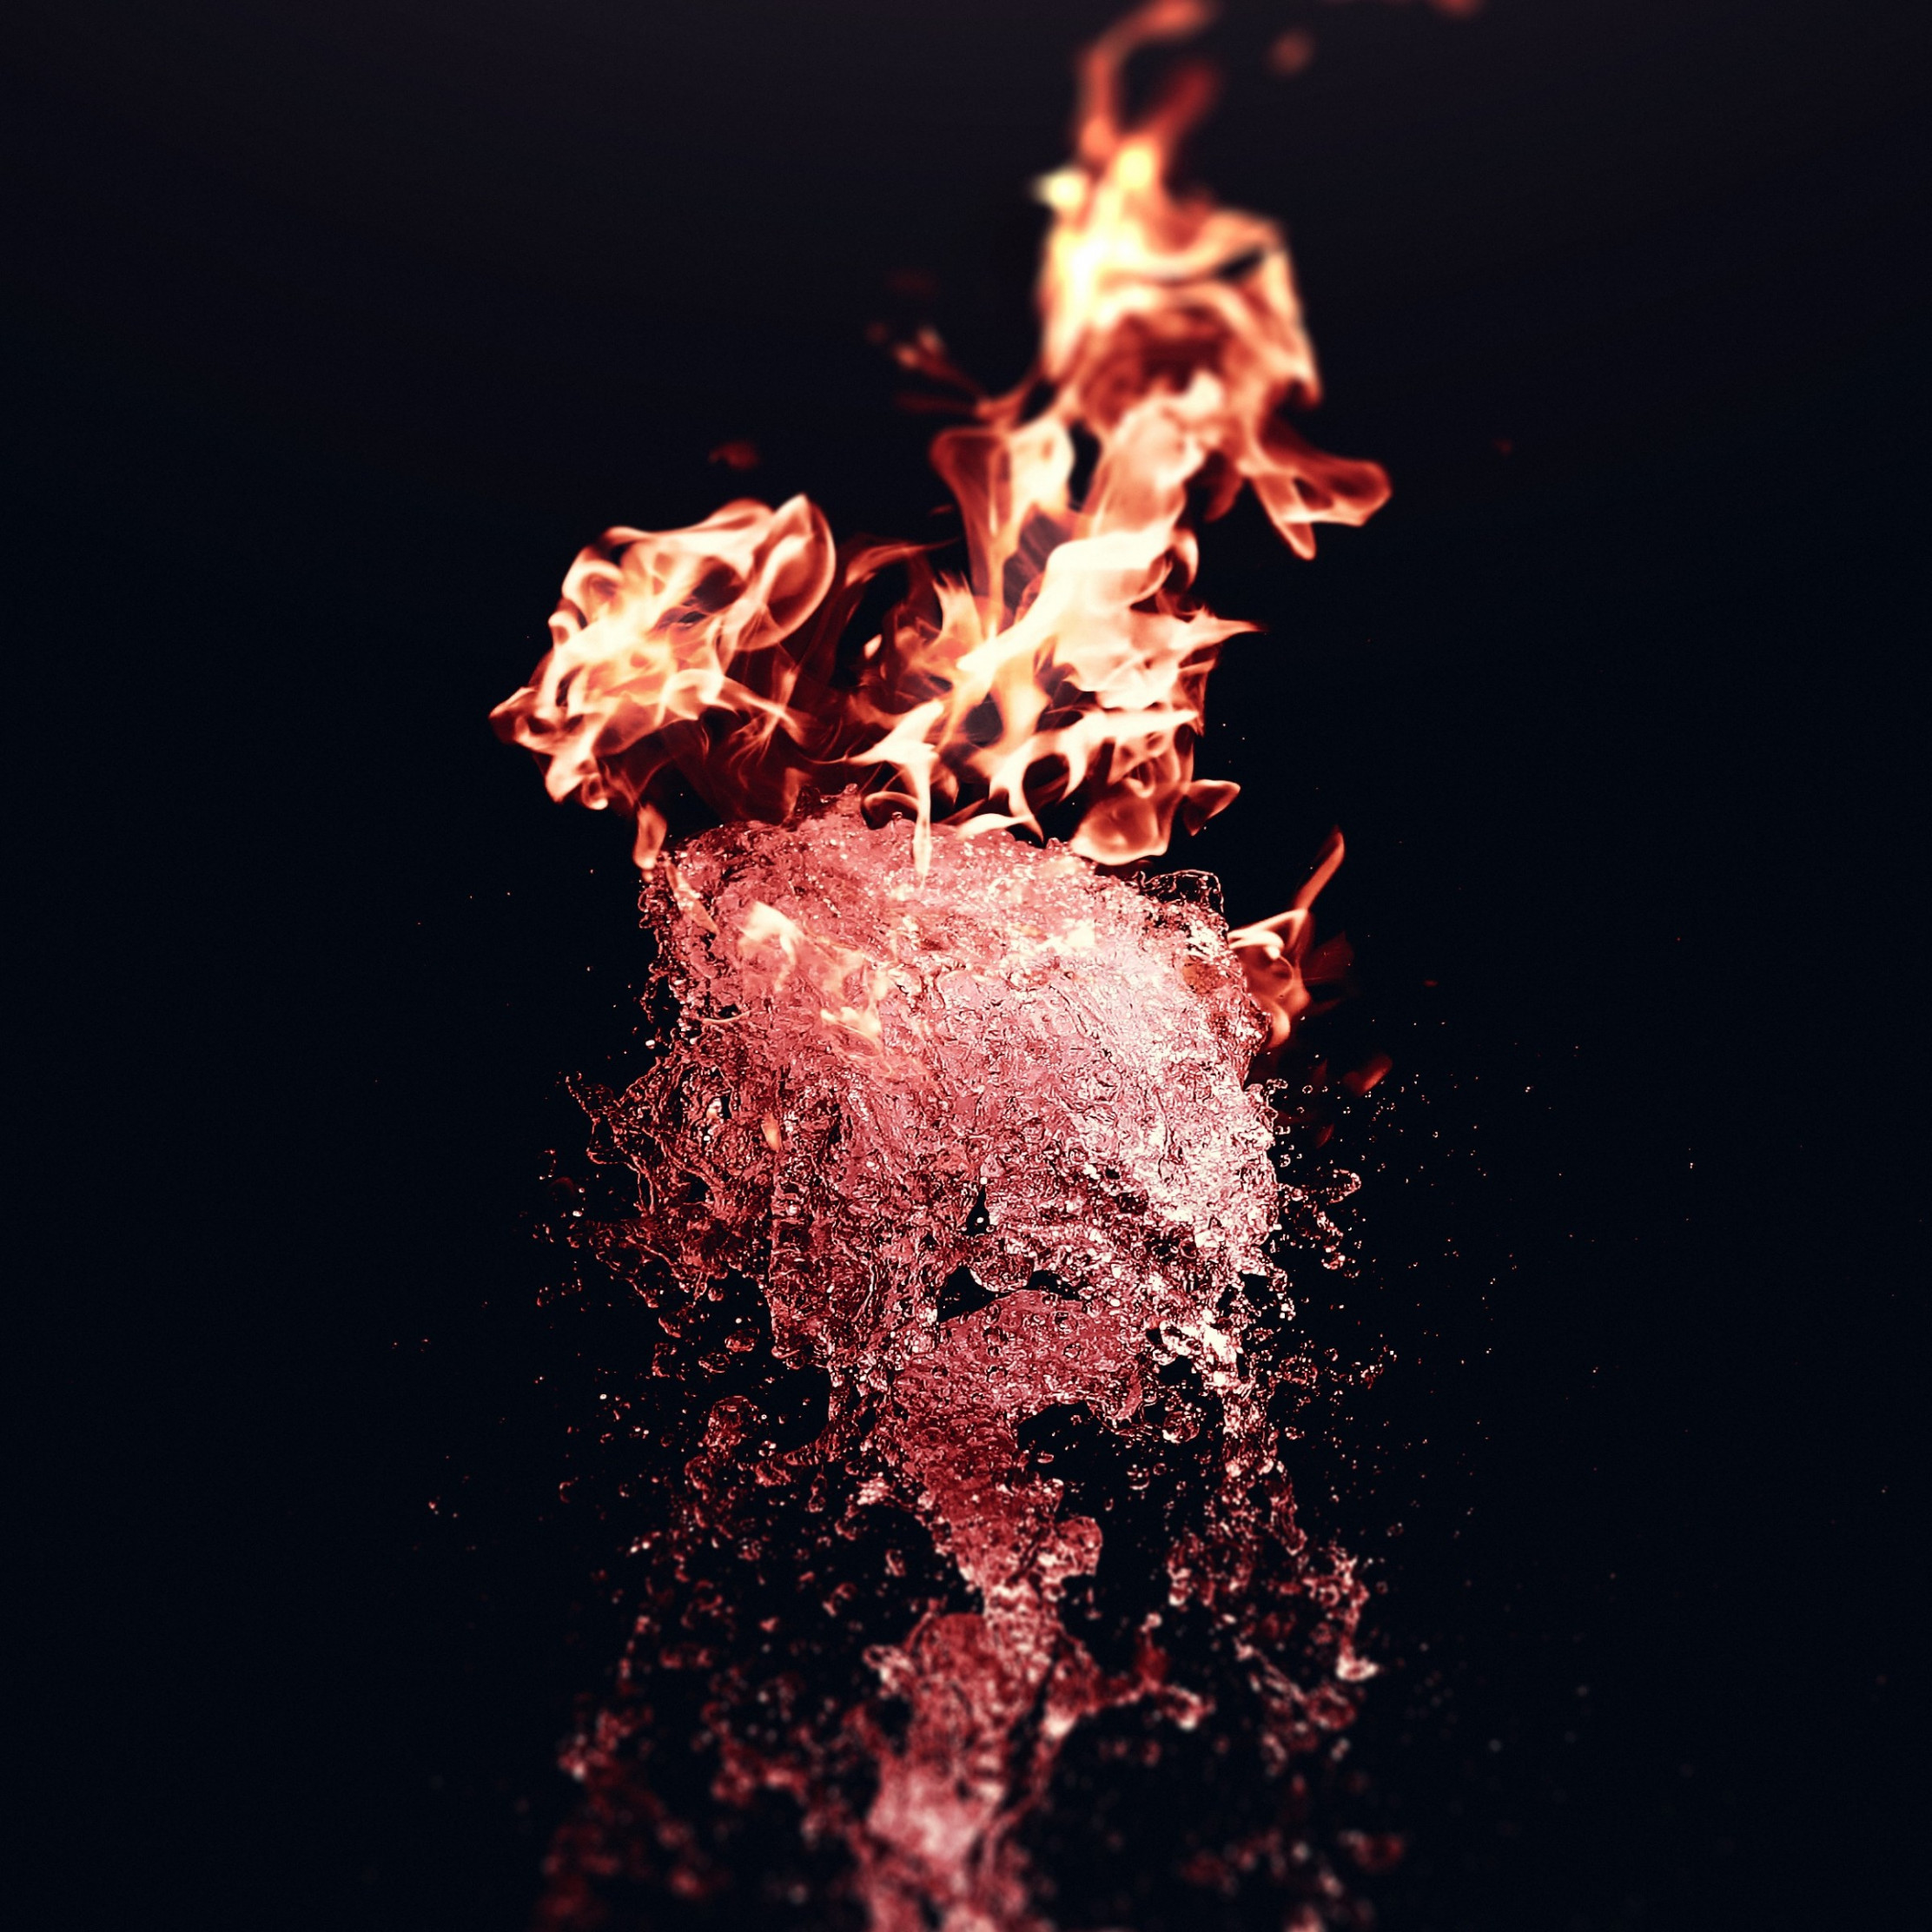 Fire Vs Water Wallpaper - Fire Water - HD Wallpaper 